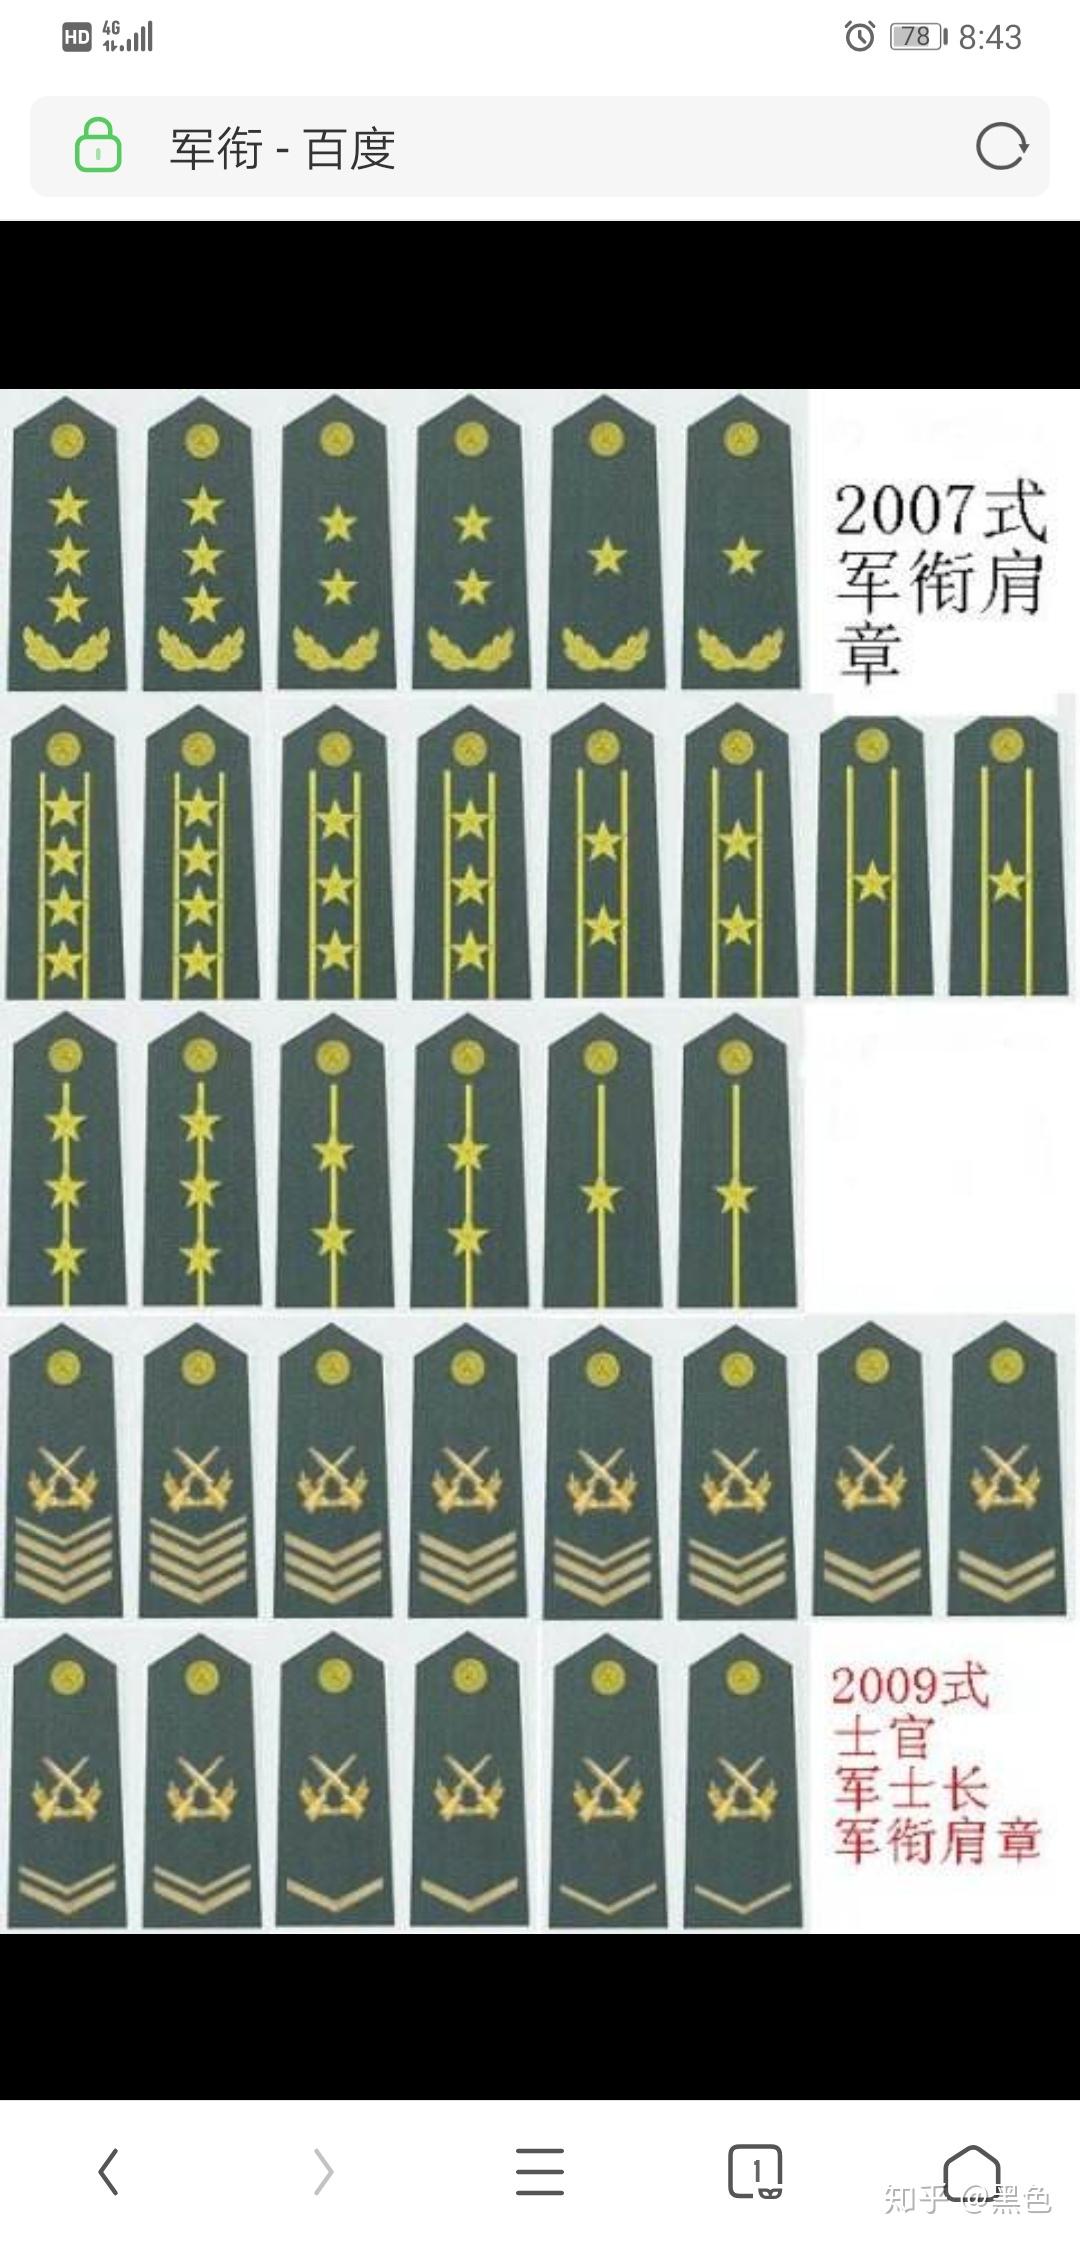 中国军衔制 - 快懂百科